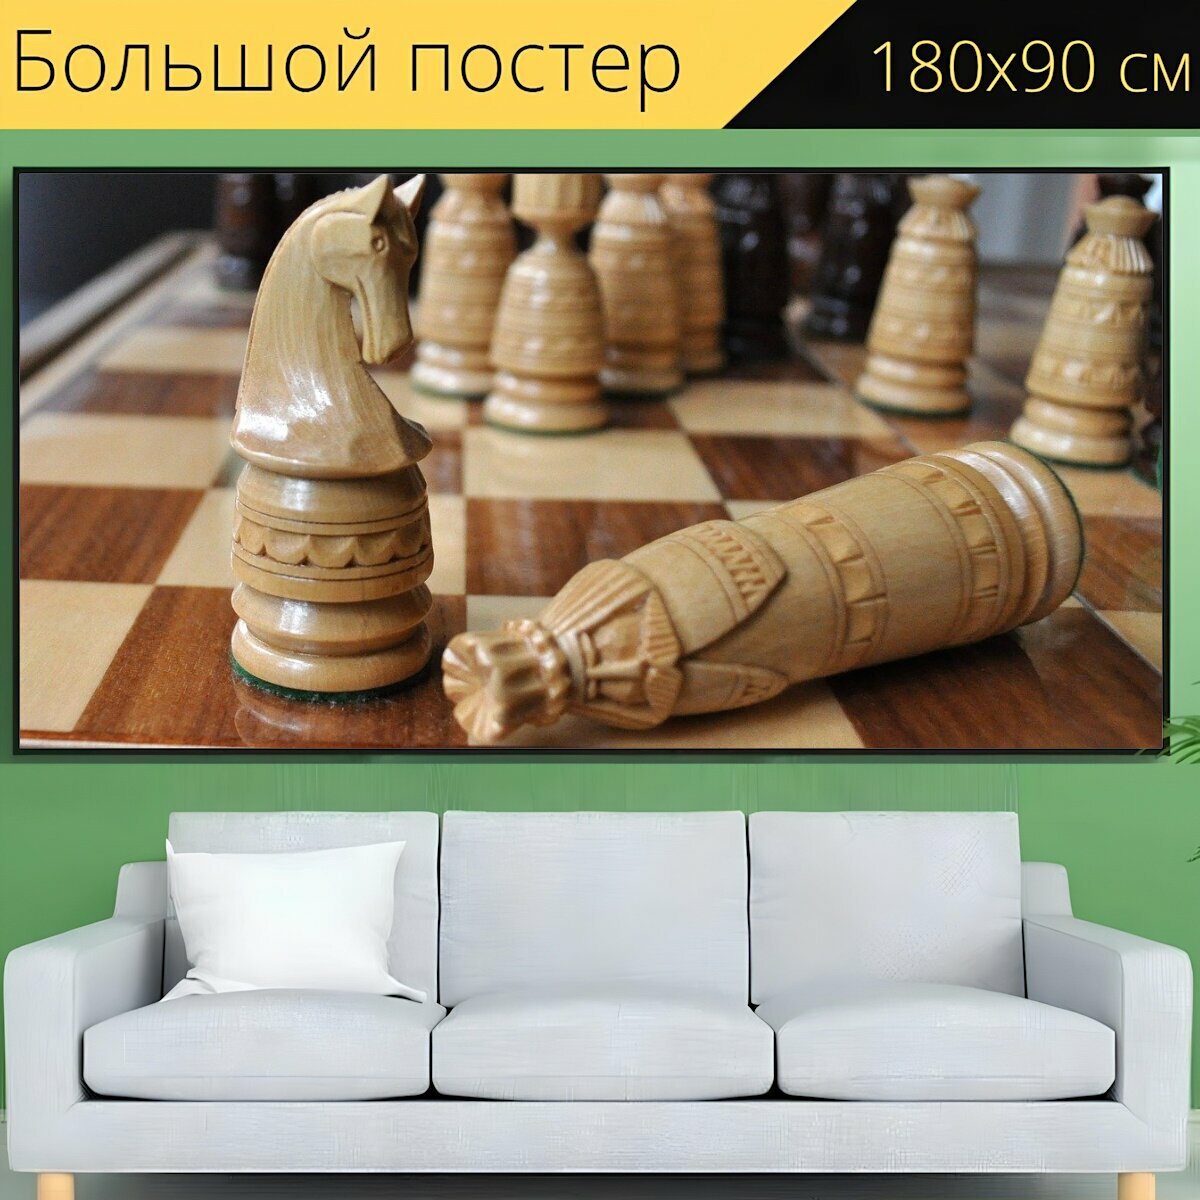 Большой постер "Шахматы, король, рыцарь" 180 x 90 см. для интерьера